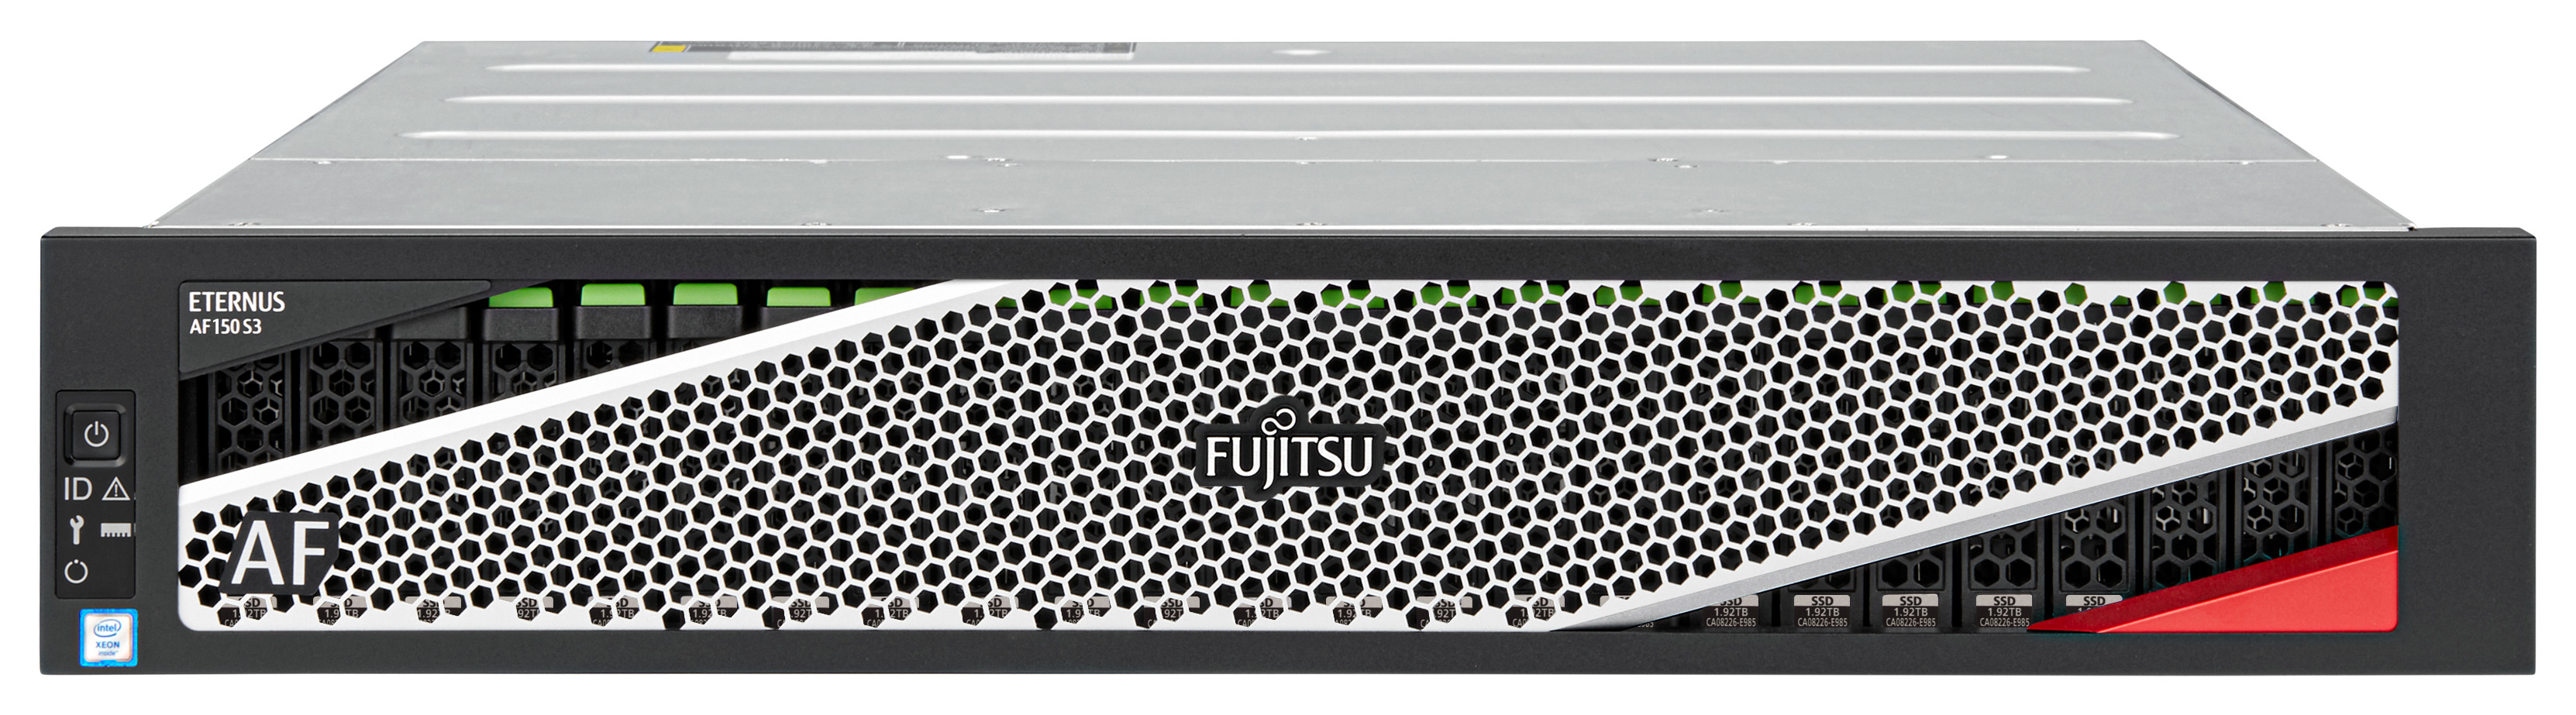 Fujitsu ETERNUS AF 150 S3 - Solid State Drive Array - 46.08 TB - 24 Schächte (SAS-3)